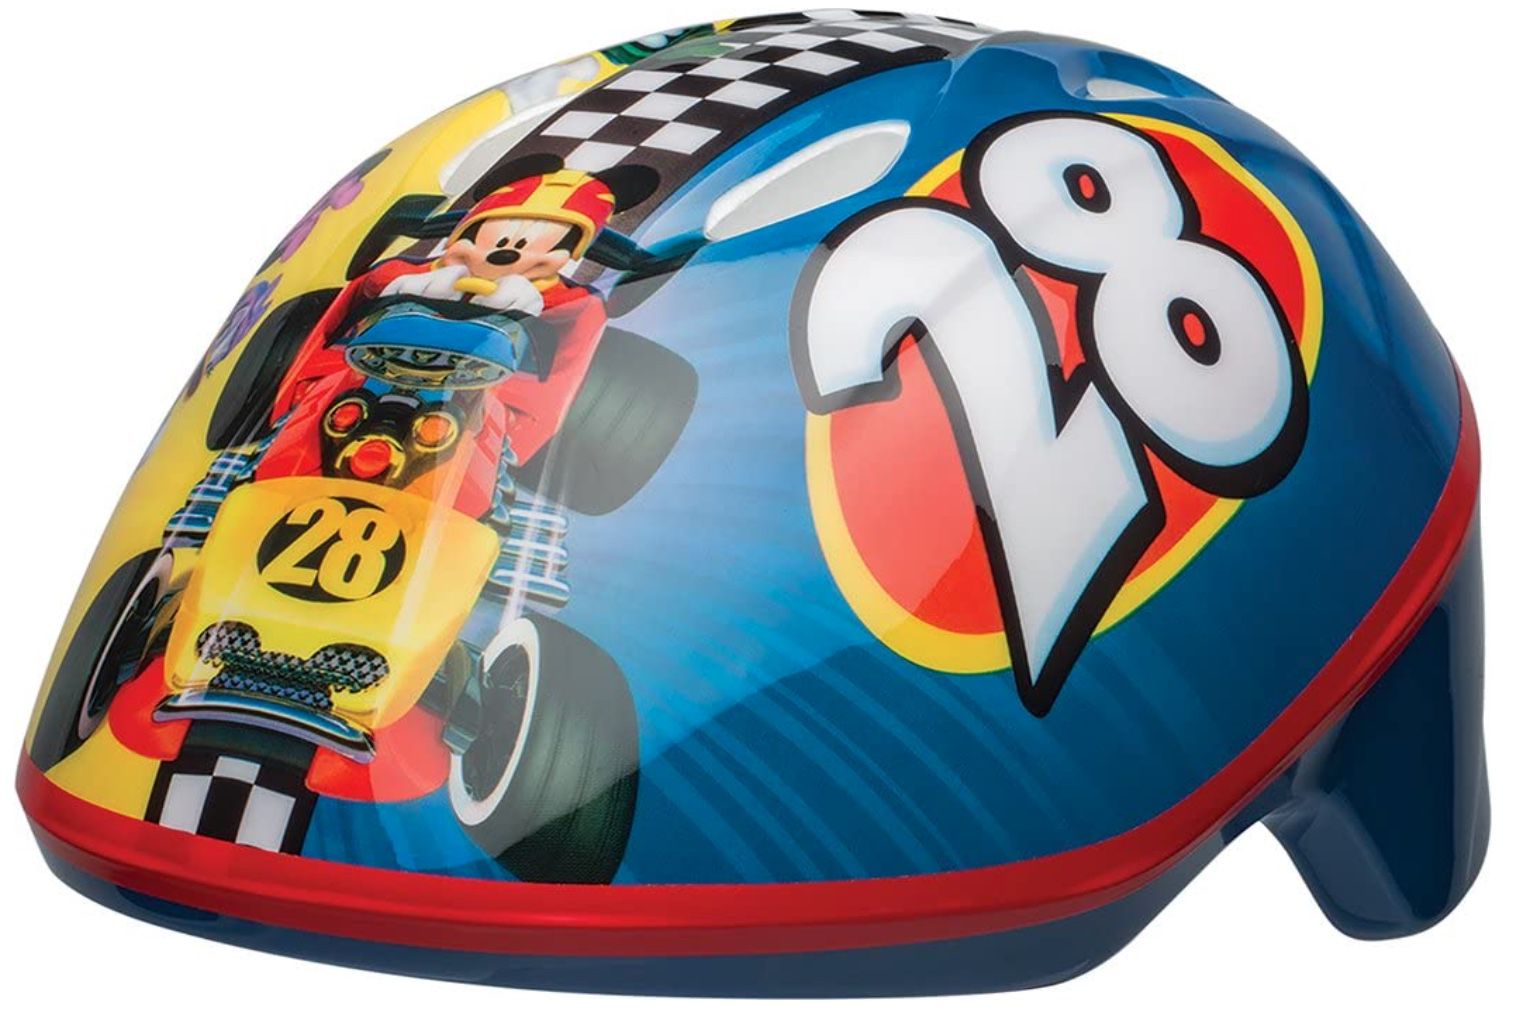 Bell Mickey Mouse Toddler Bike Helmet for Kids